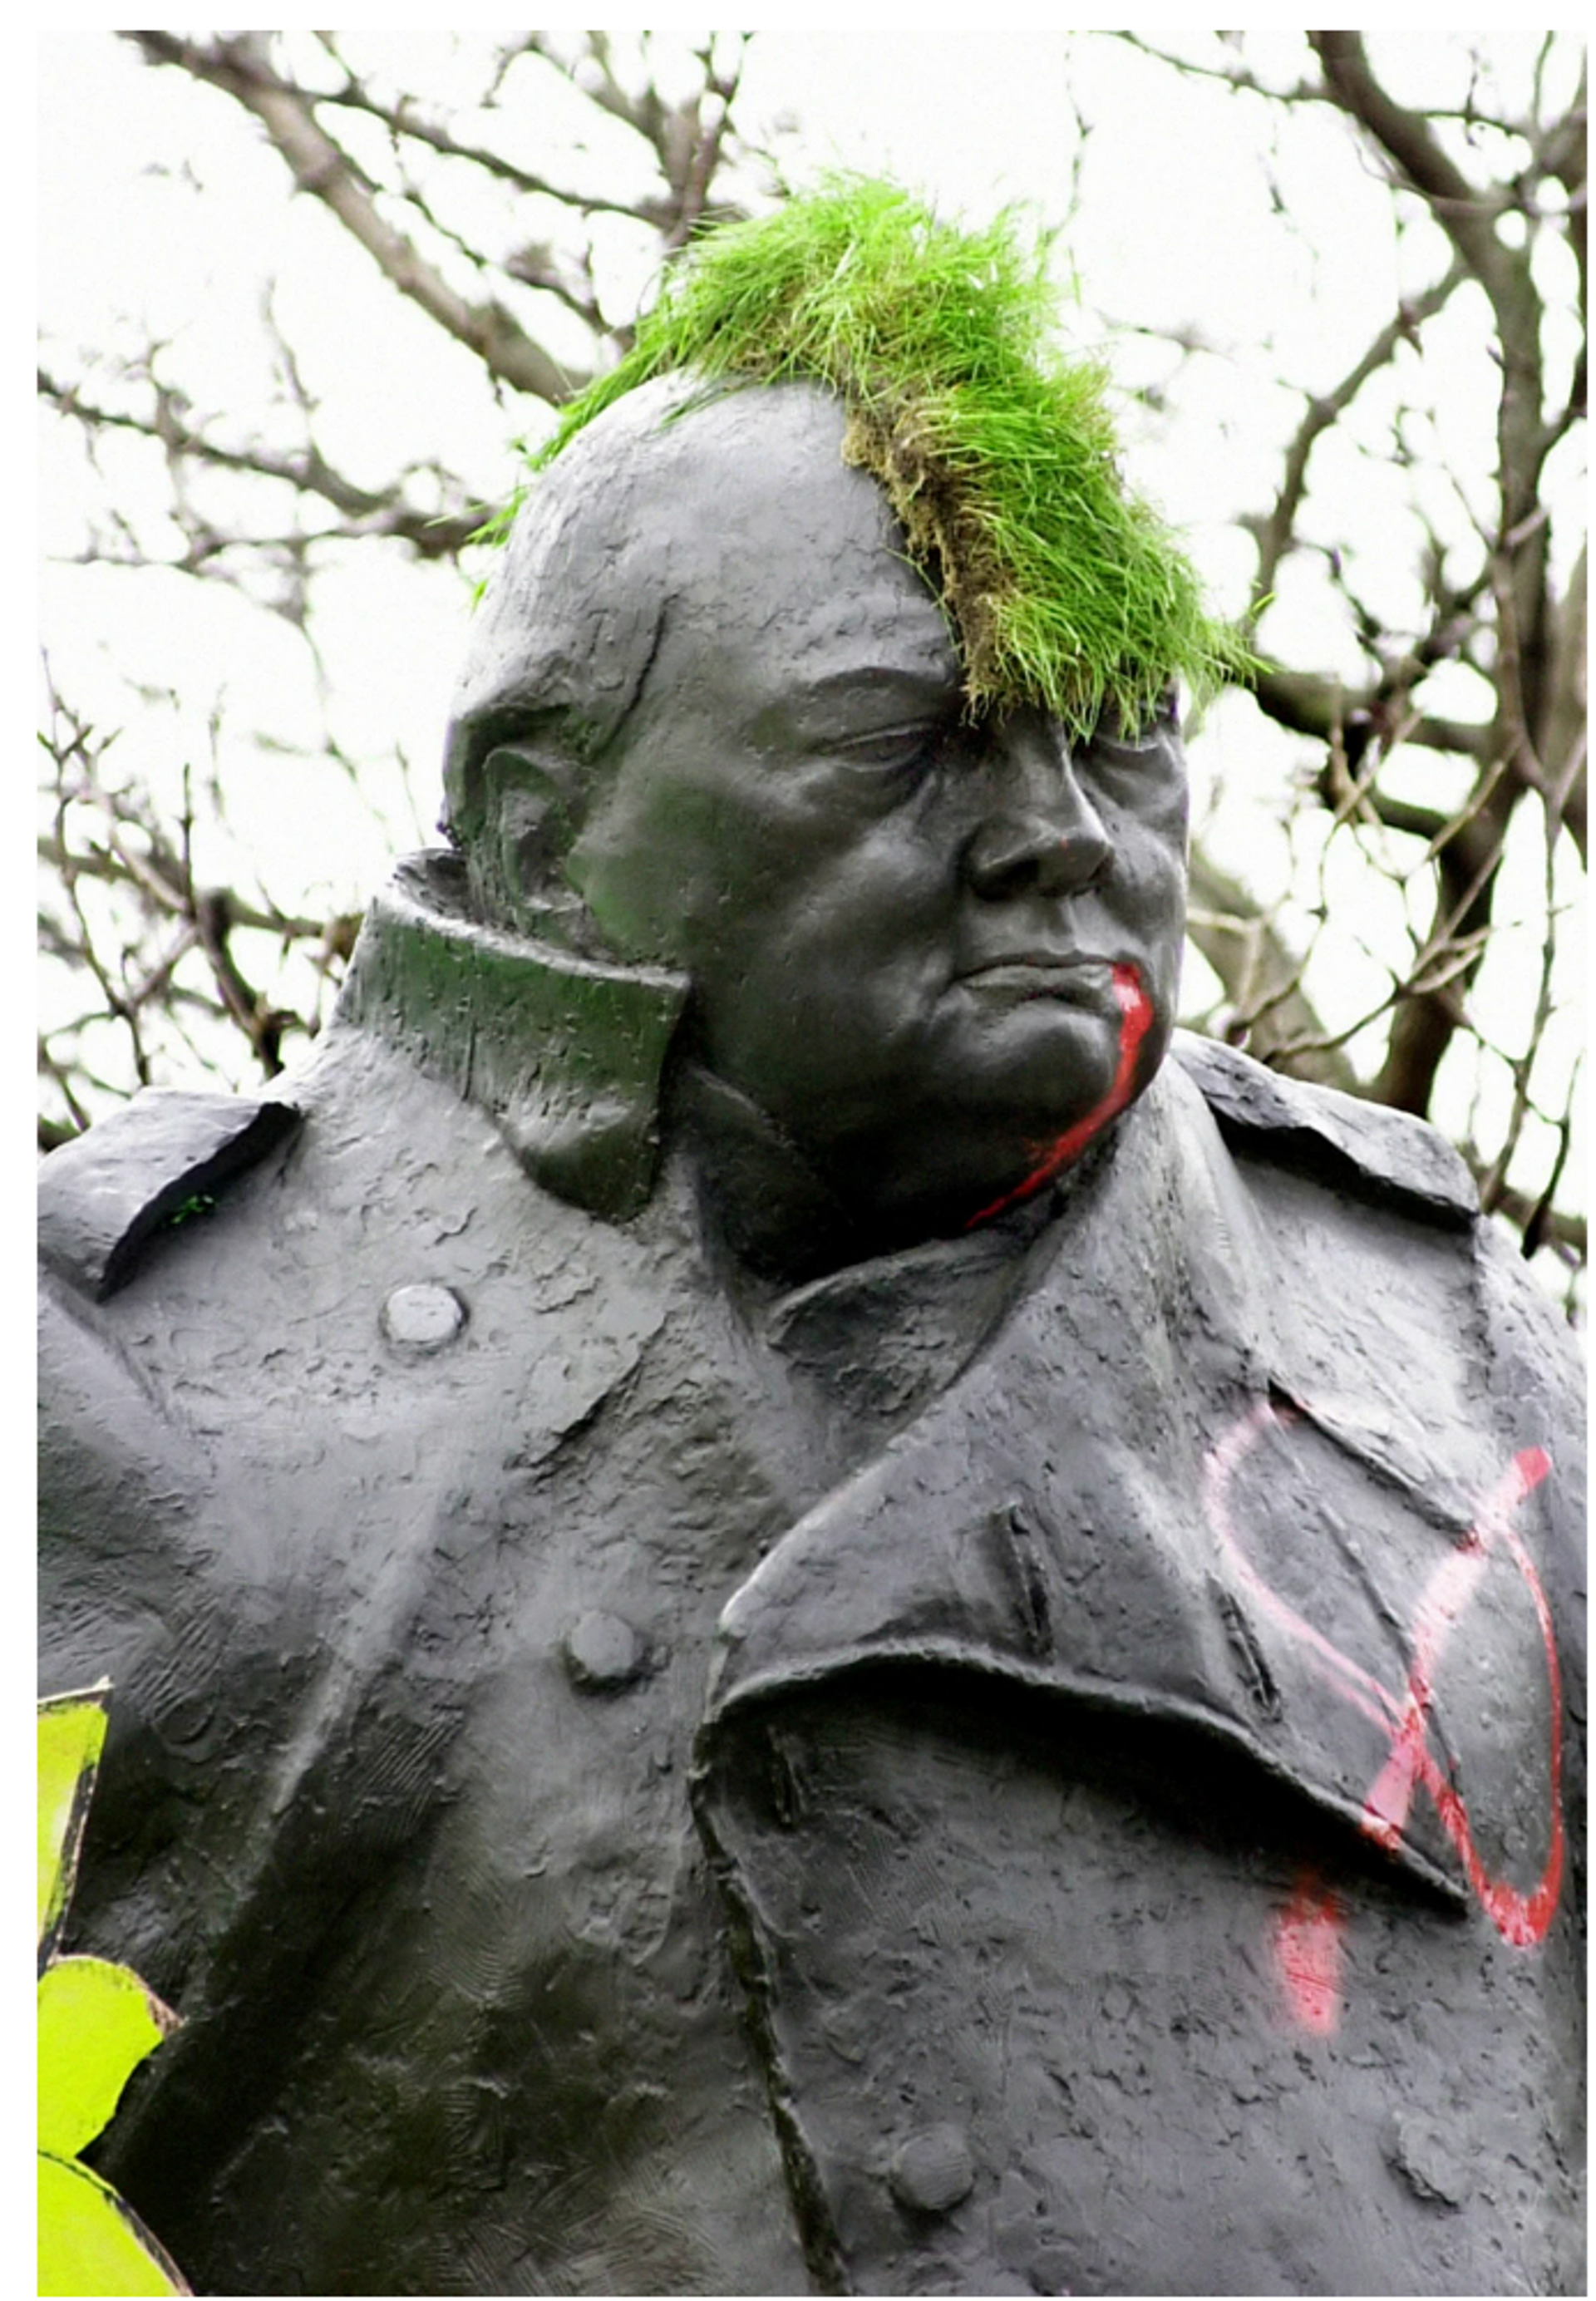 Defaced Statue Of Winston Churchill by John Stillwell